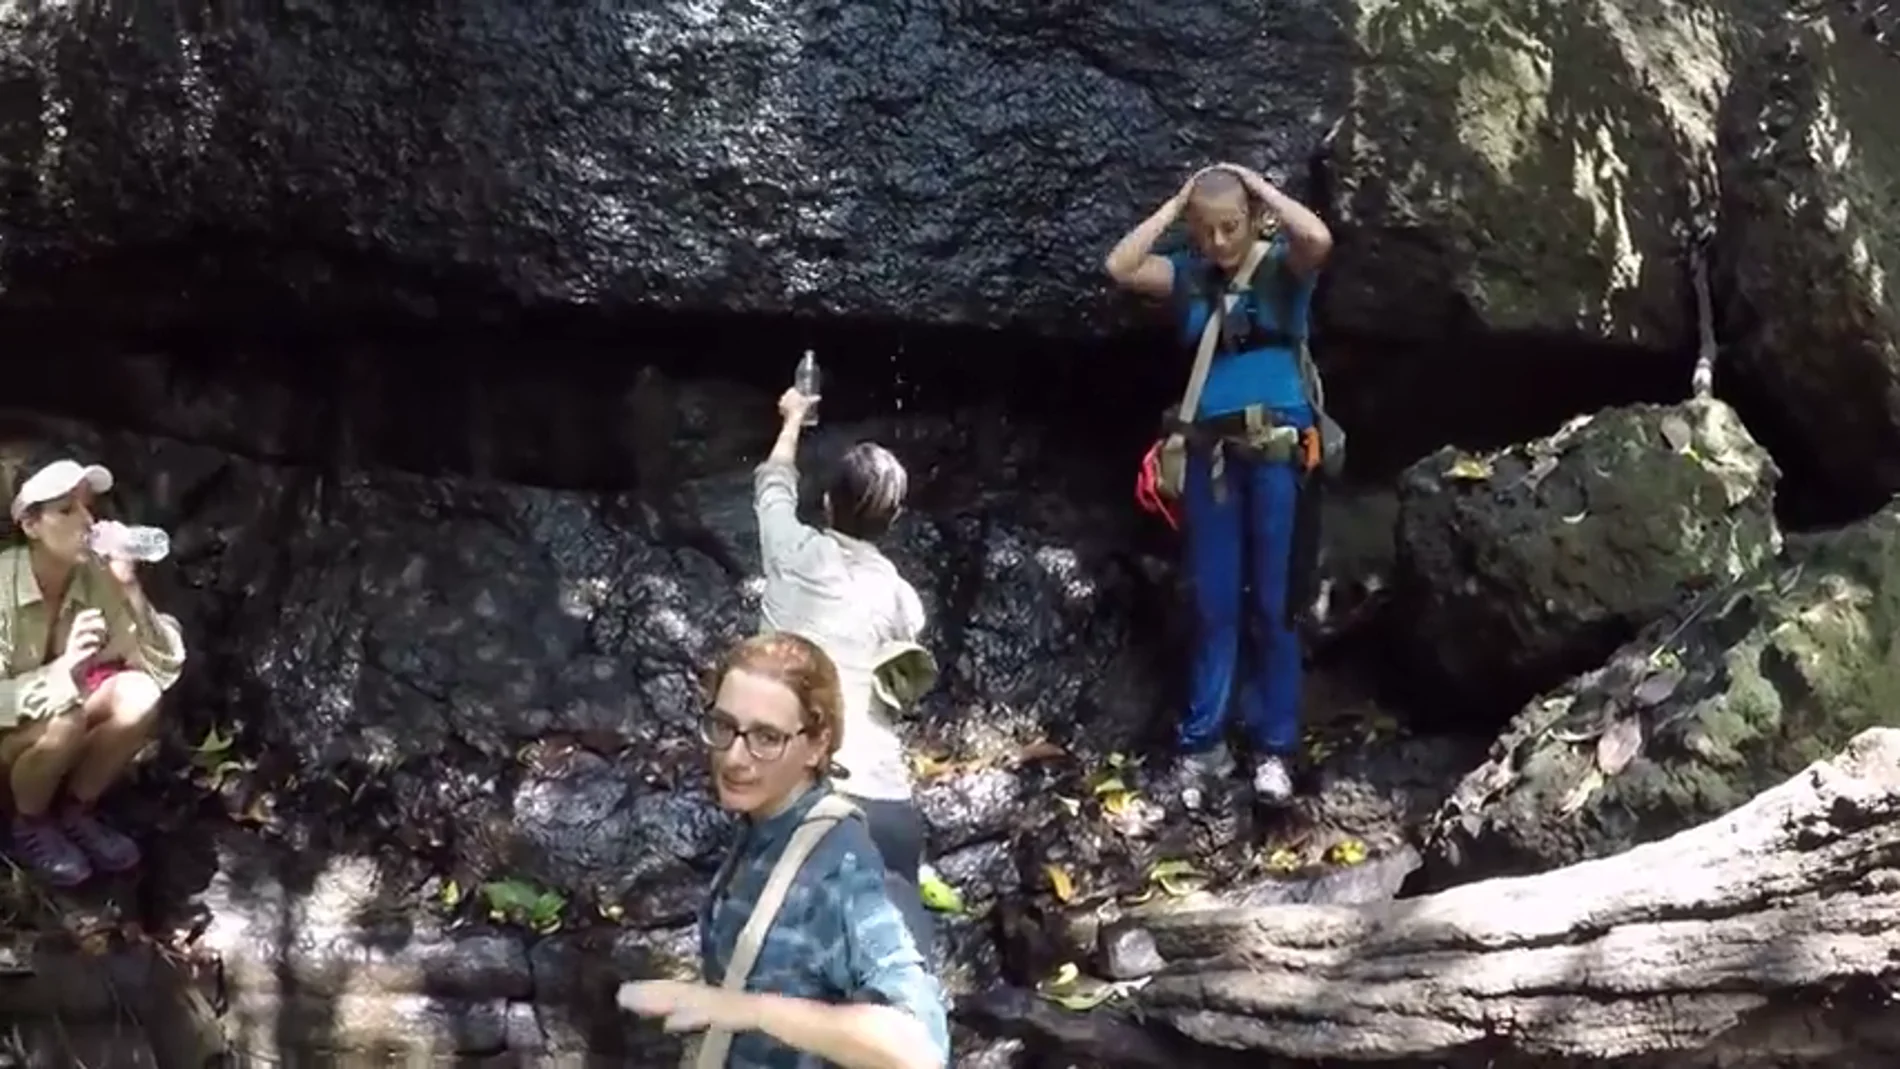 Los gritos de las aventureras al encontrar una cascada en medio de la selva: "¡Ese agua se puede beber, chicas!"